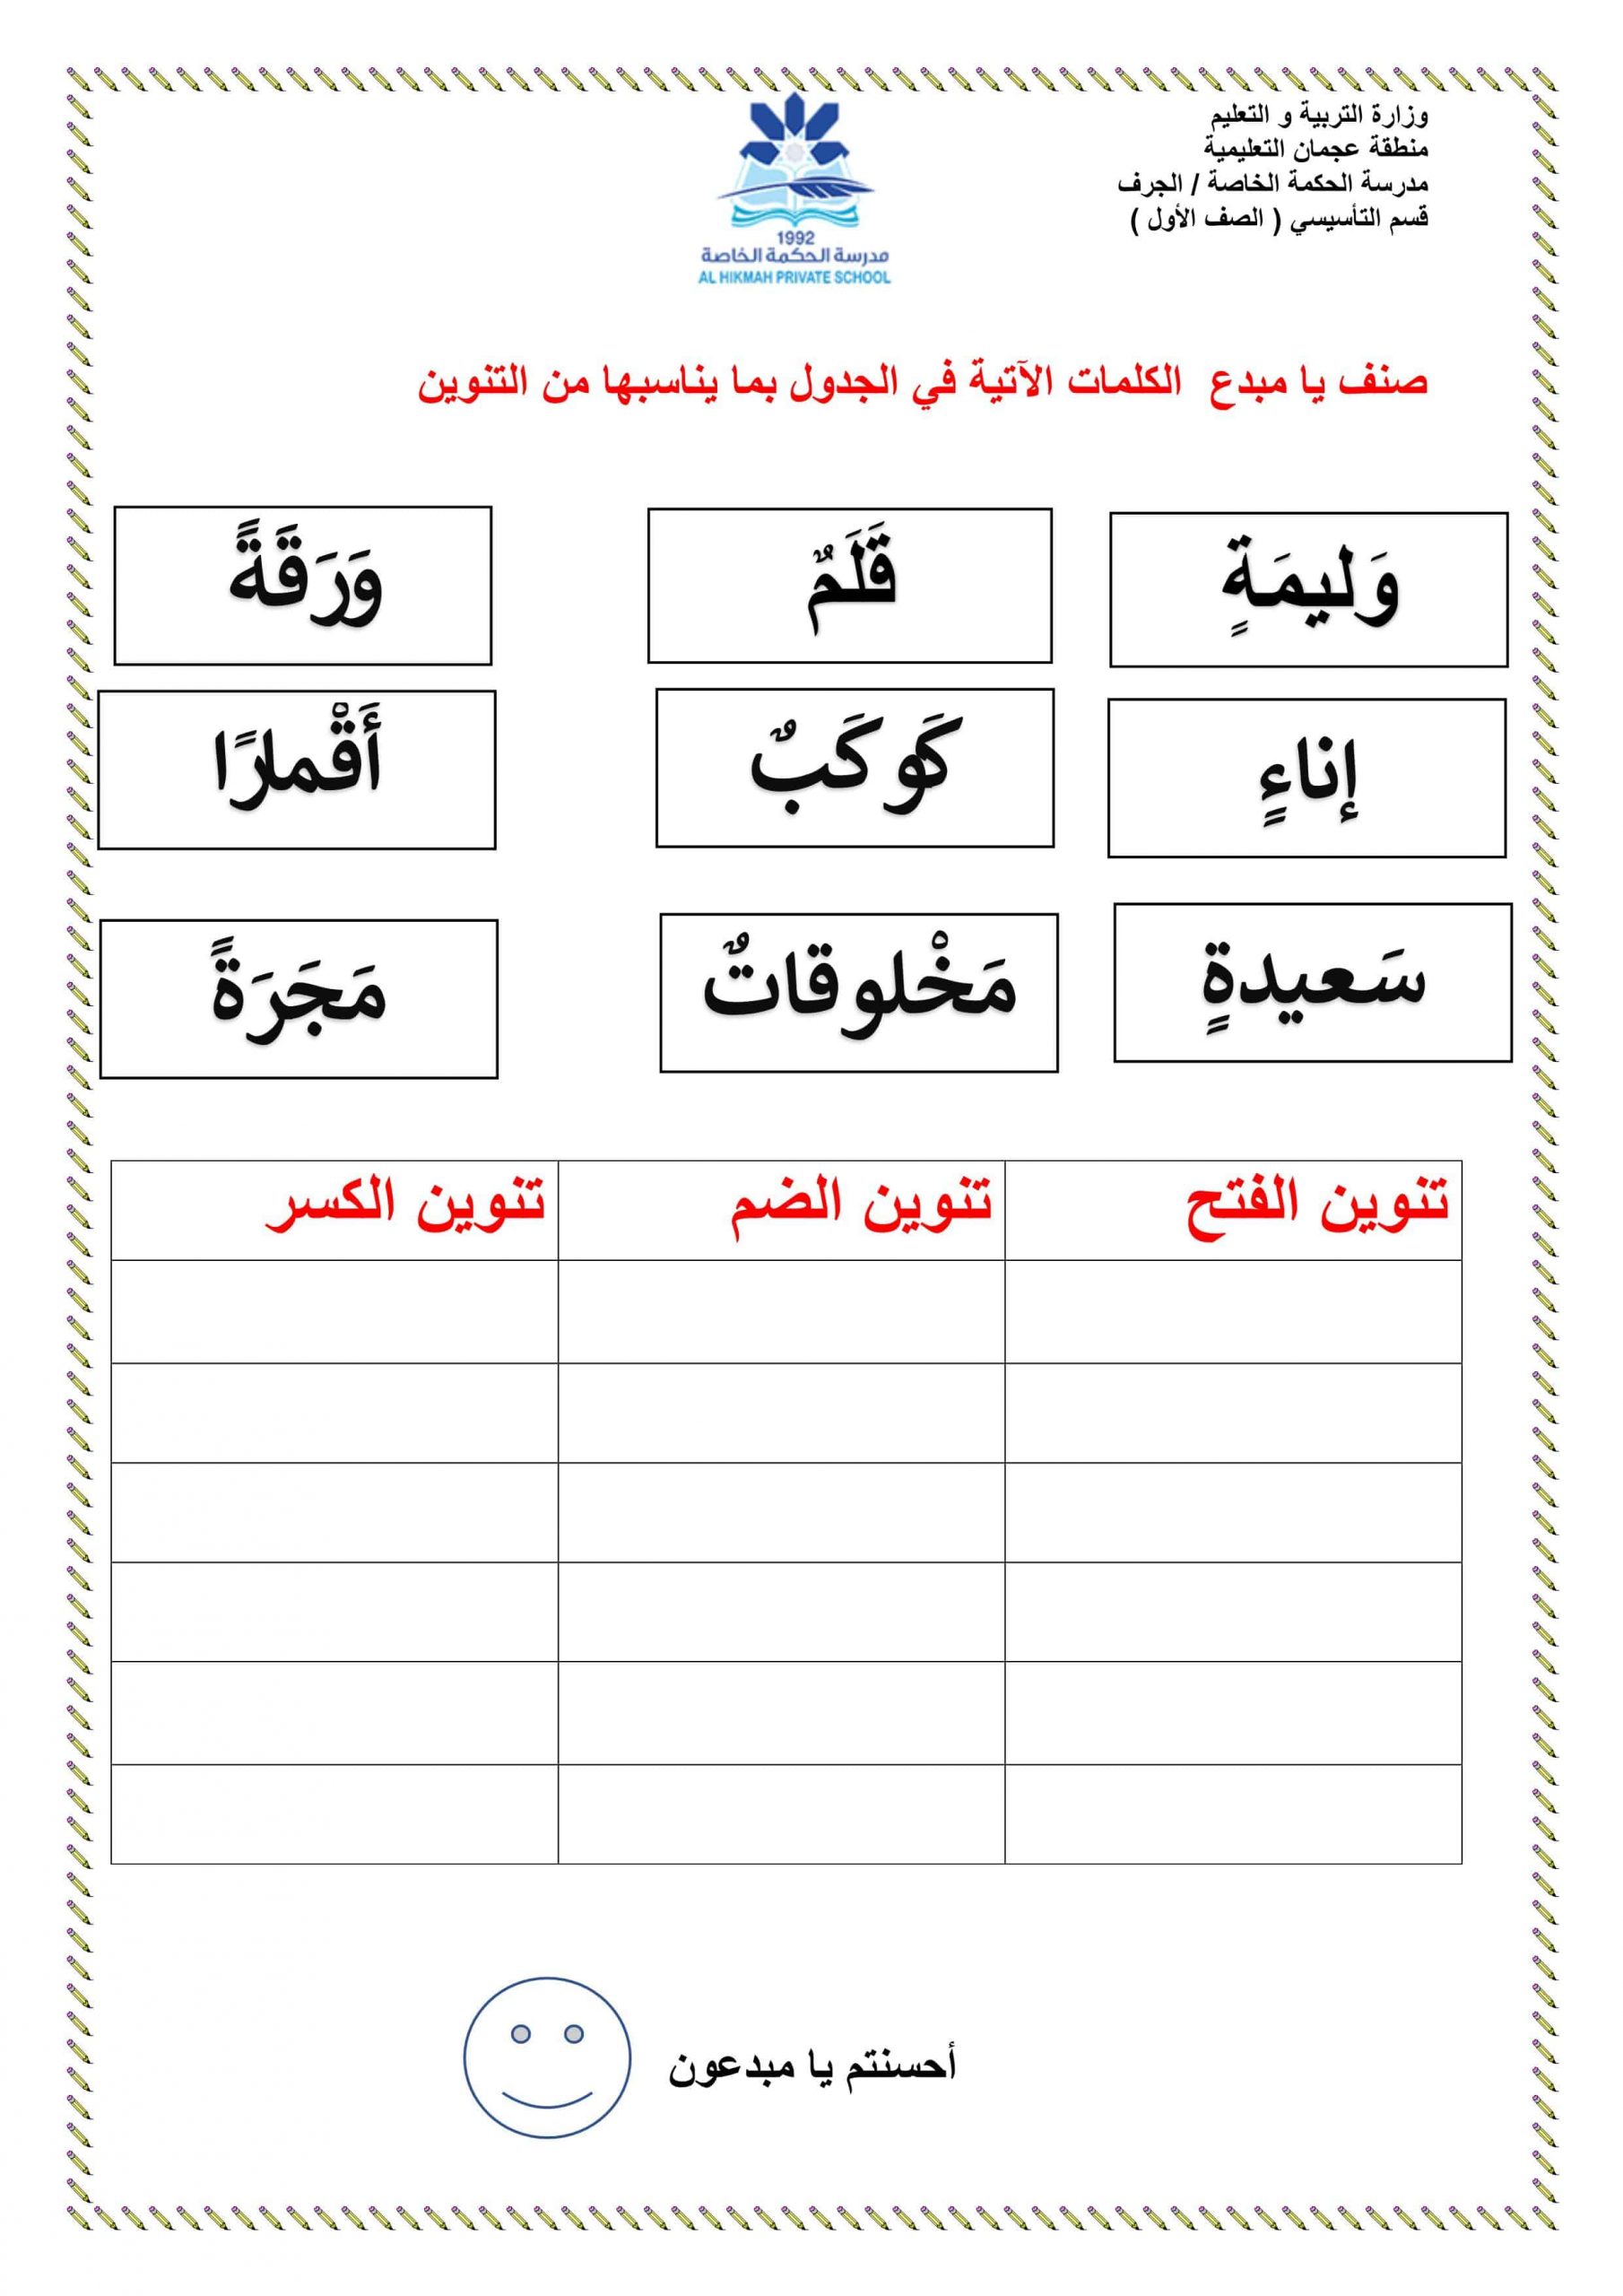 ورقة عمل درس التنوين الفصل الدراسي الثاني الصف الأول مادة اللغة العربية 